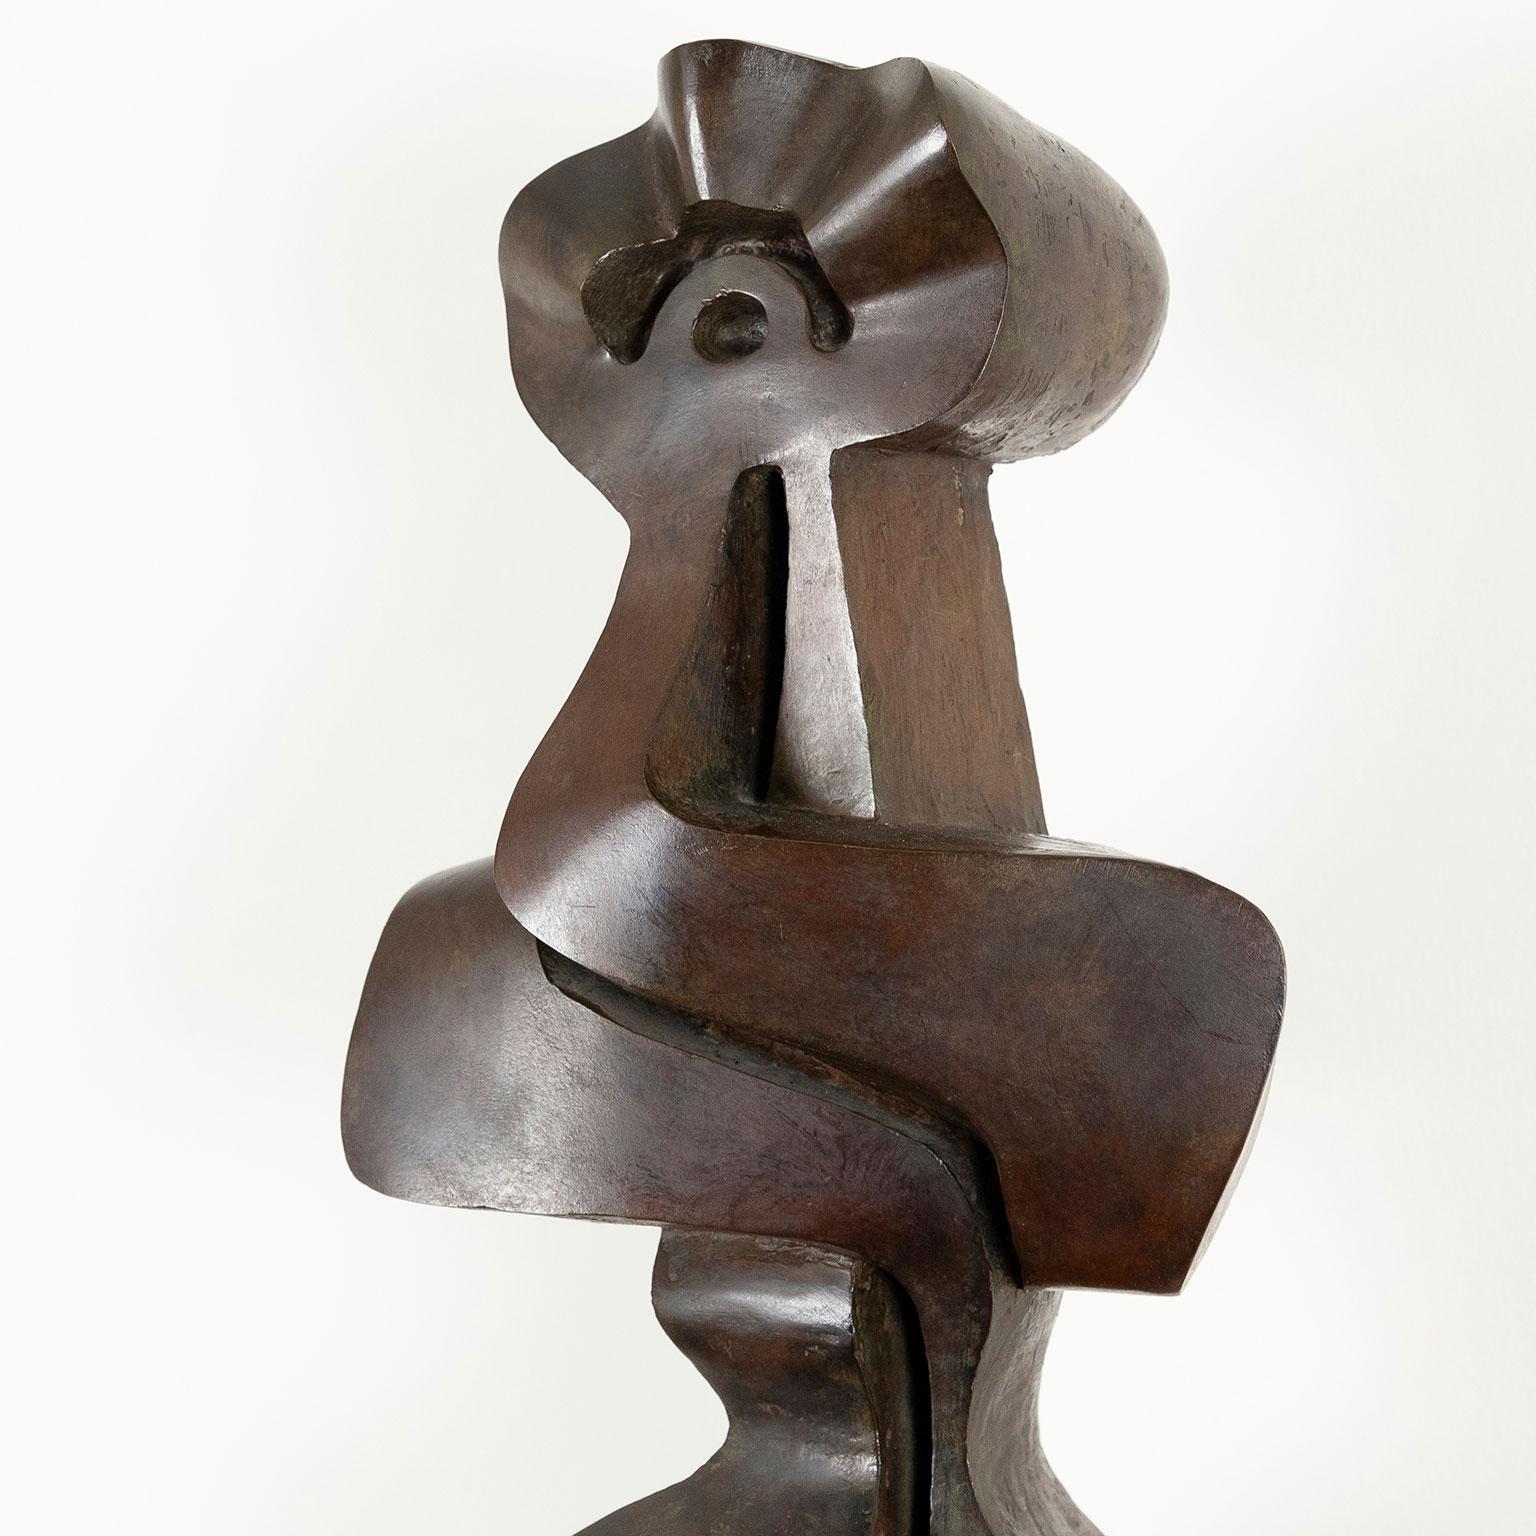 Antigone - Abstract Sculpture by Sorel Etrog